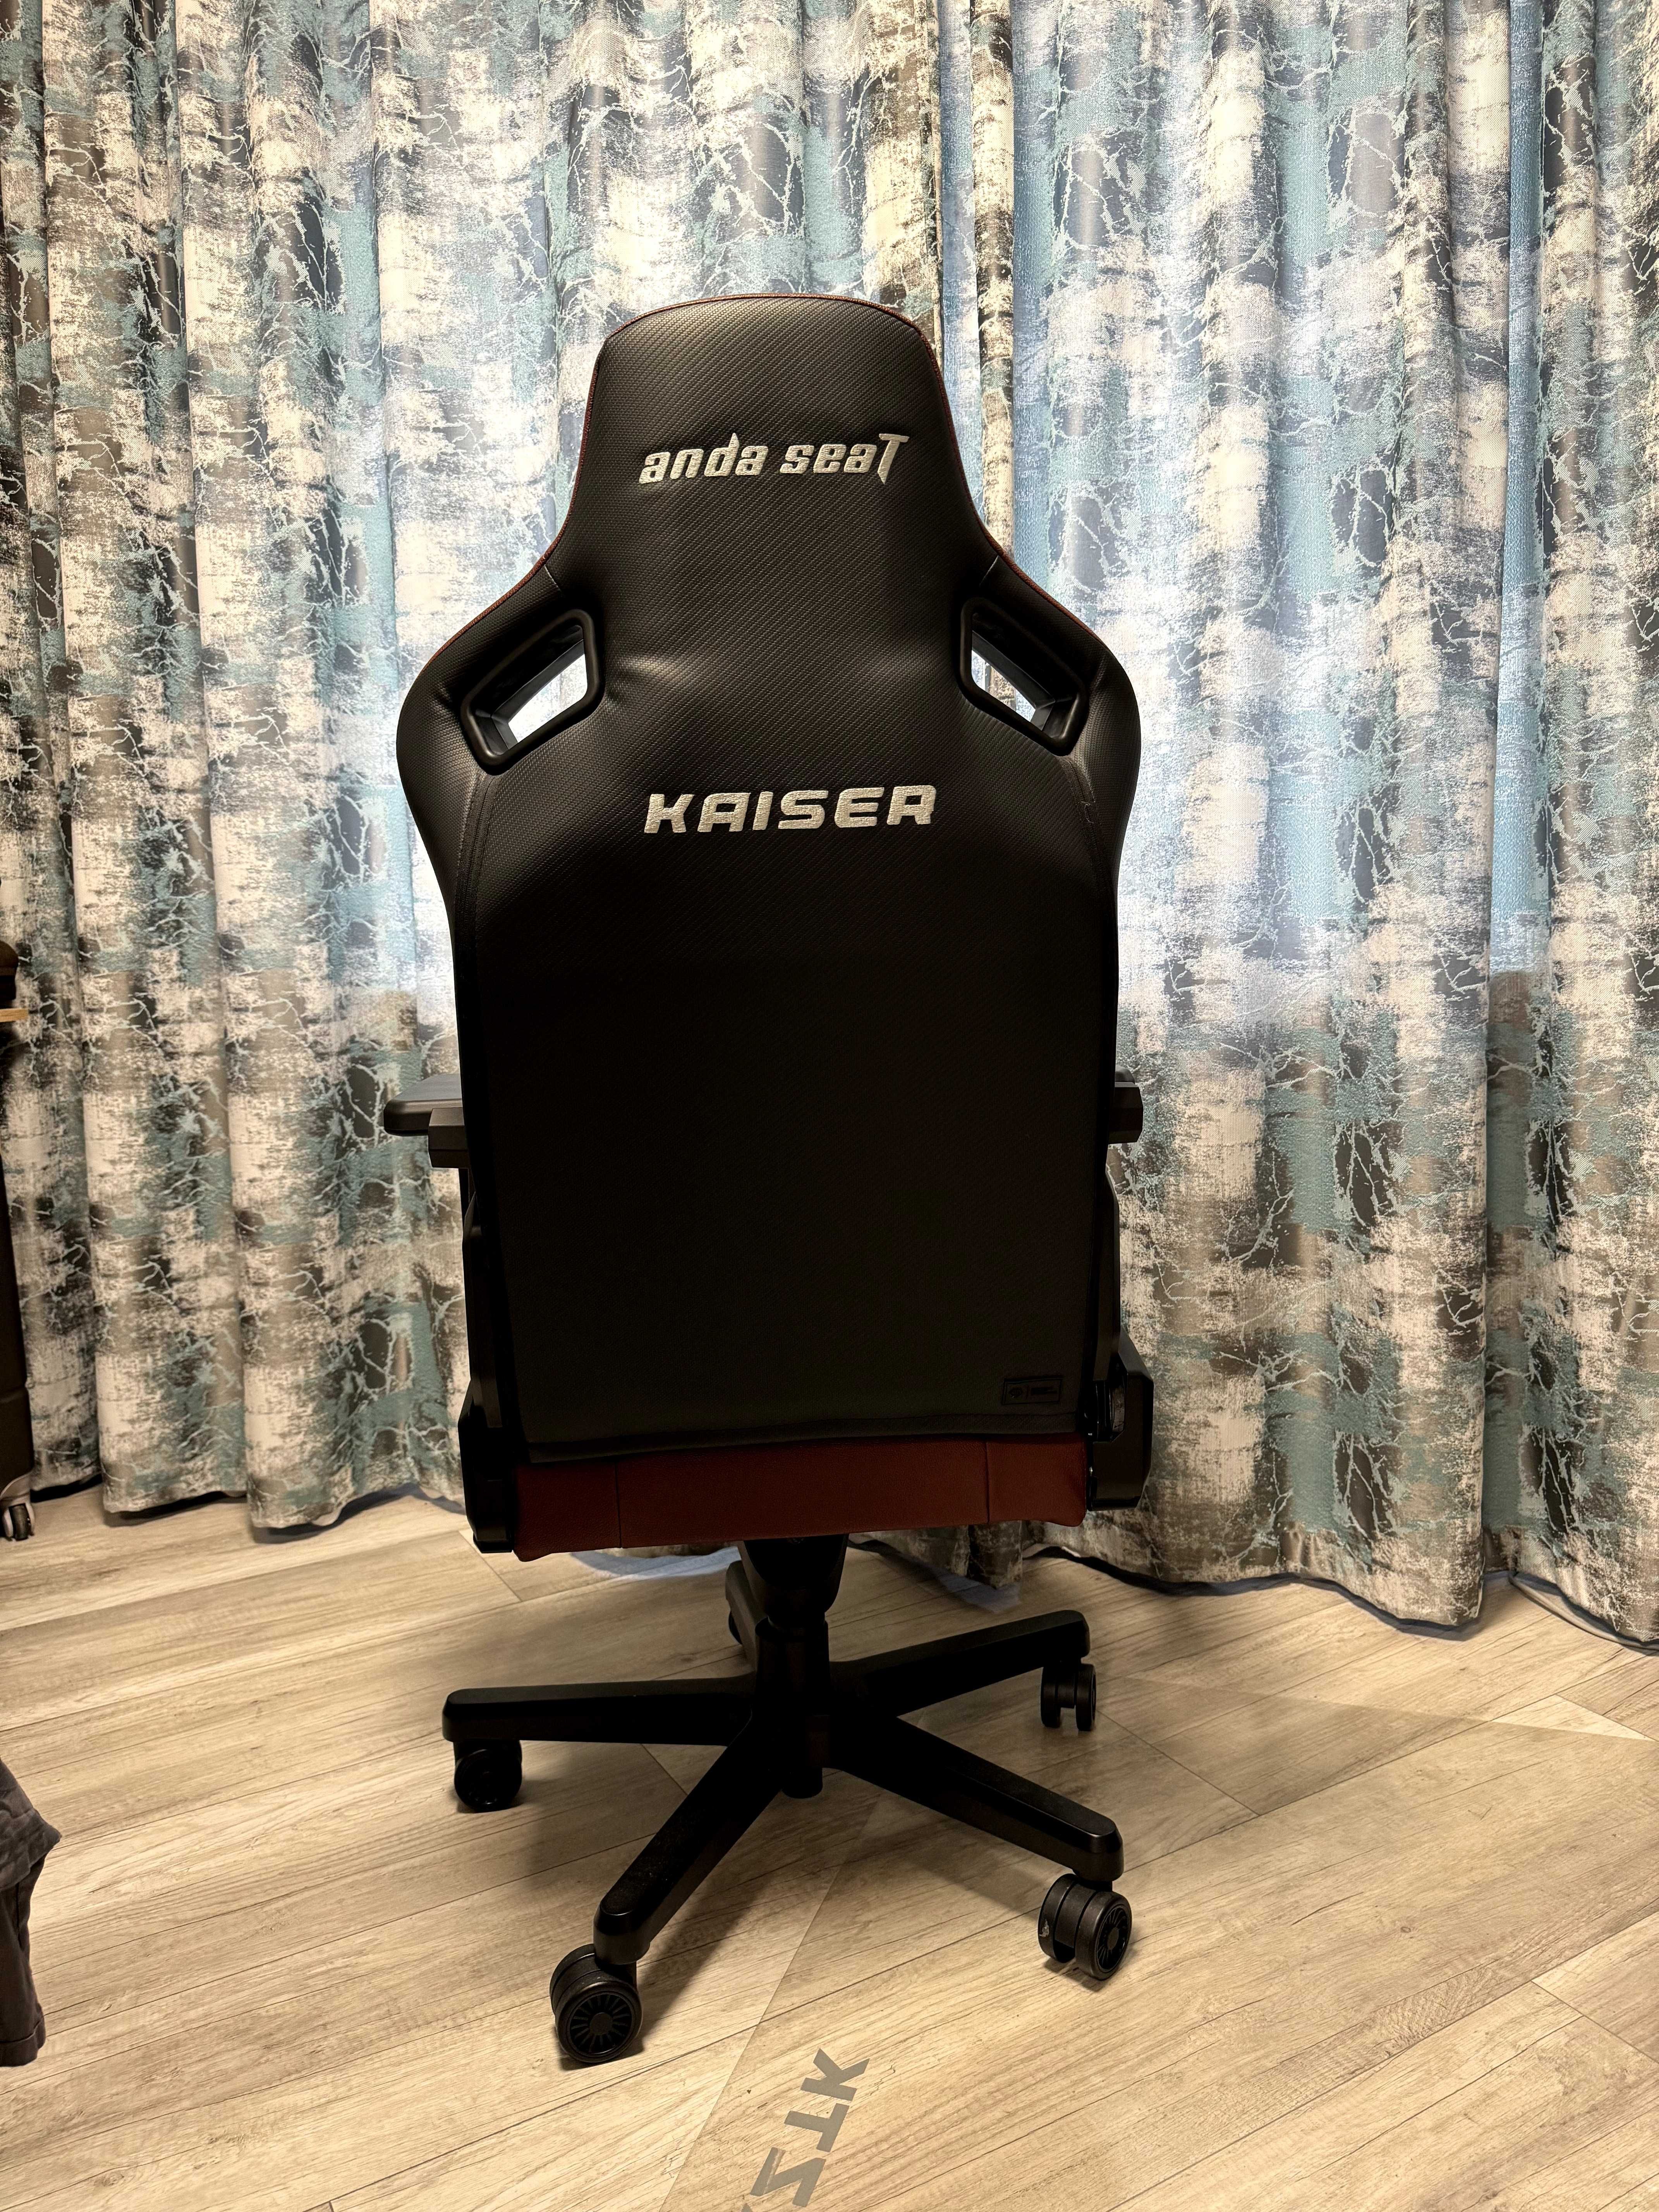 Продам Крісло для геймерів Anda Seat Kaiser 3 Size L Maroon